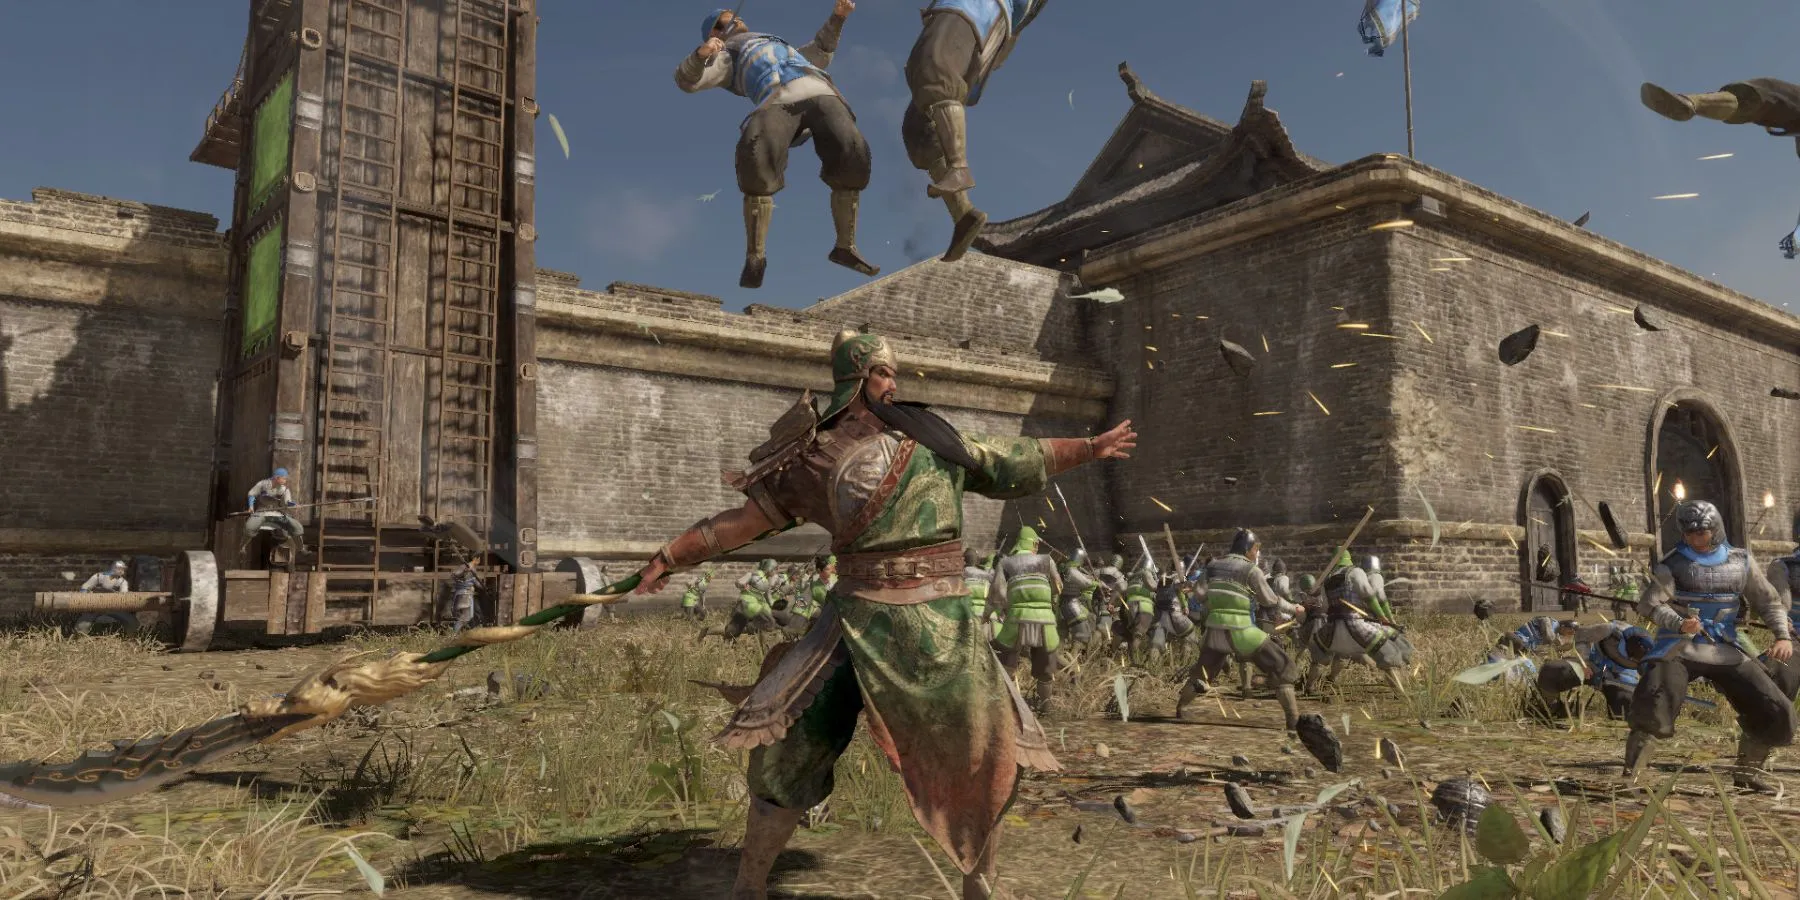 Guan Yu colpisce nemici